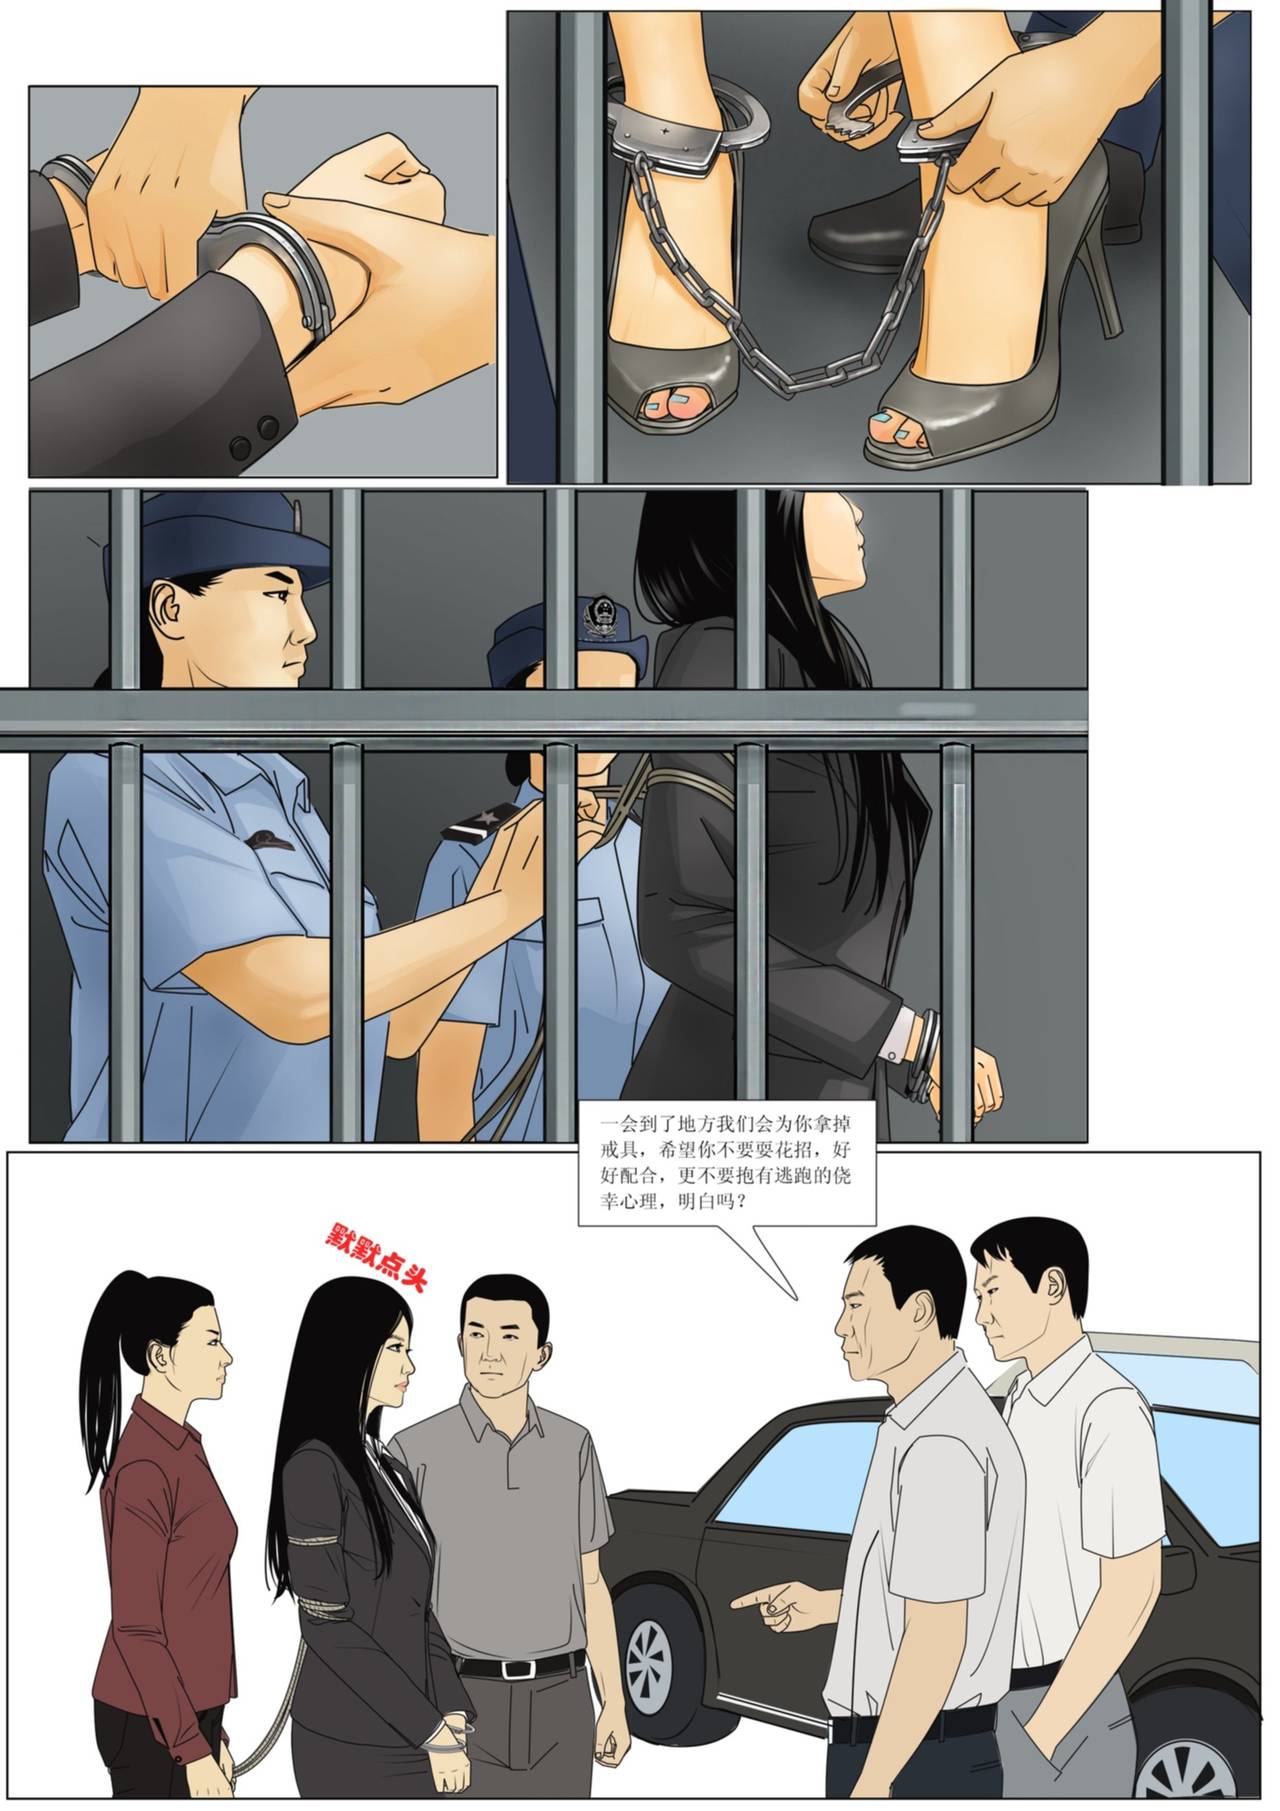 [枫语]Three Female Prisoners 4 [Chinese]中文 极度重犯4 诱捕